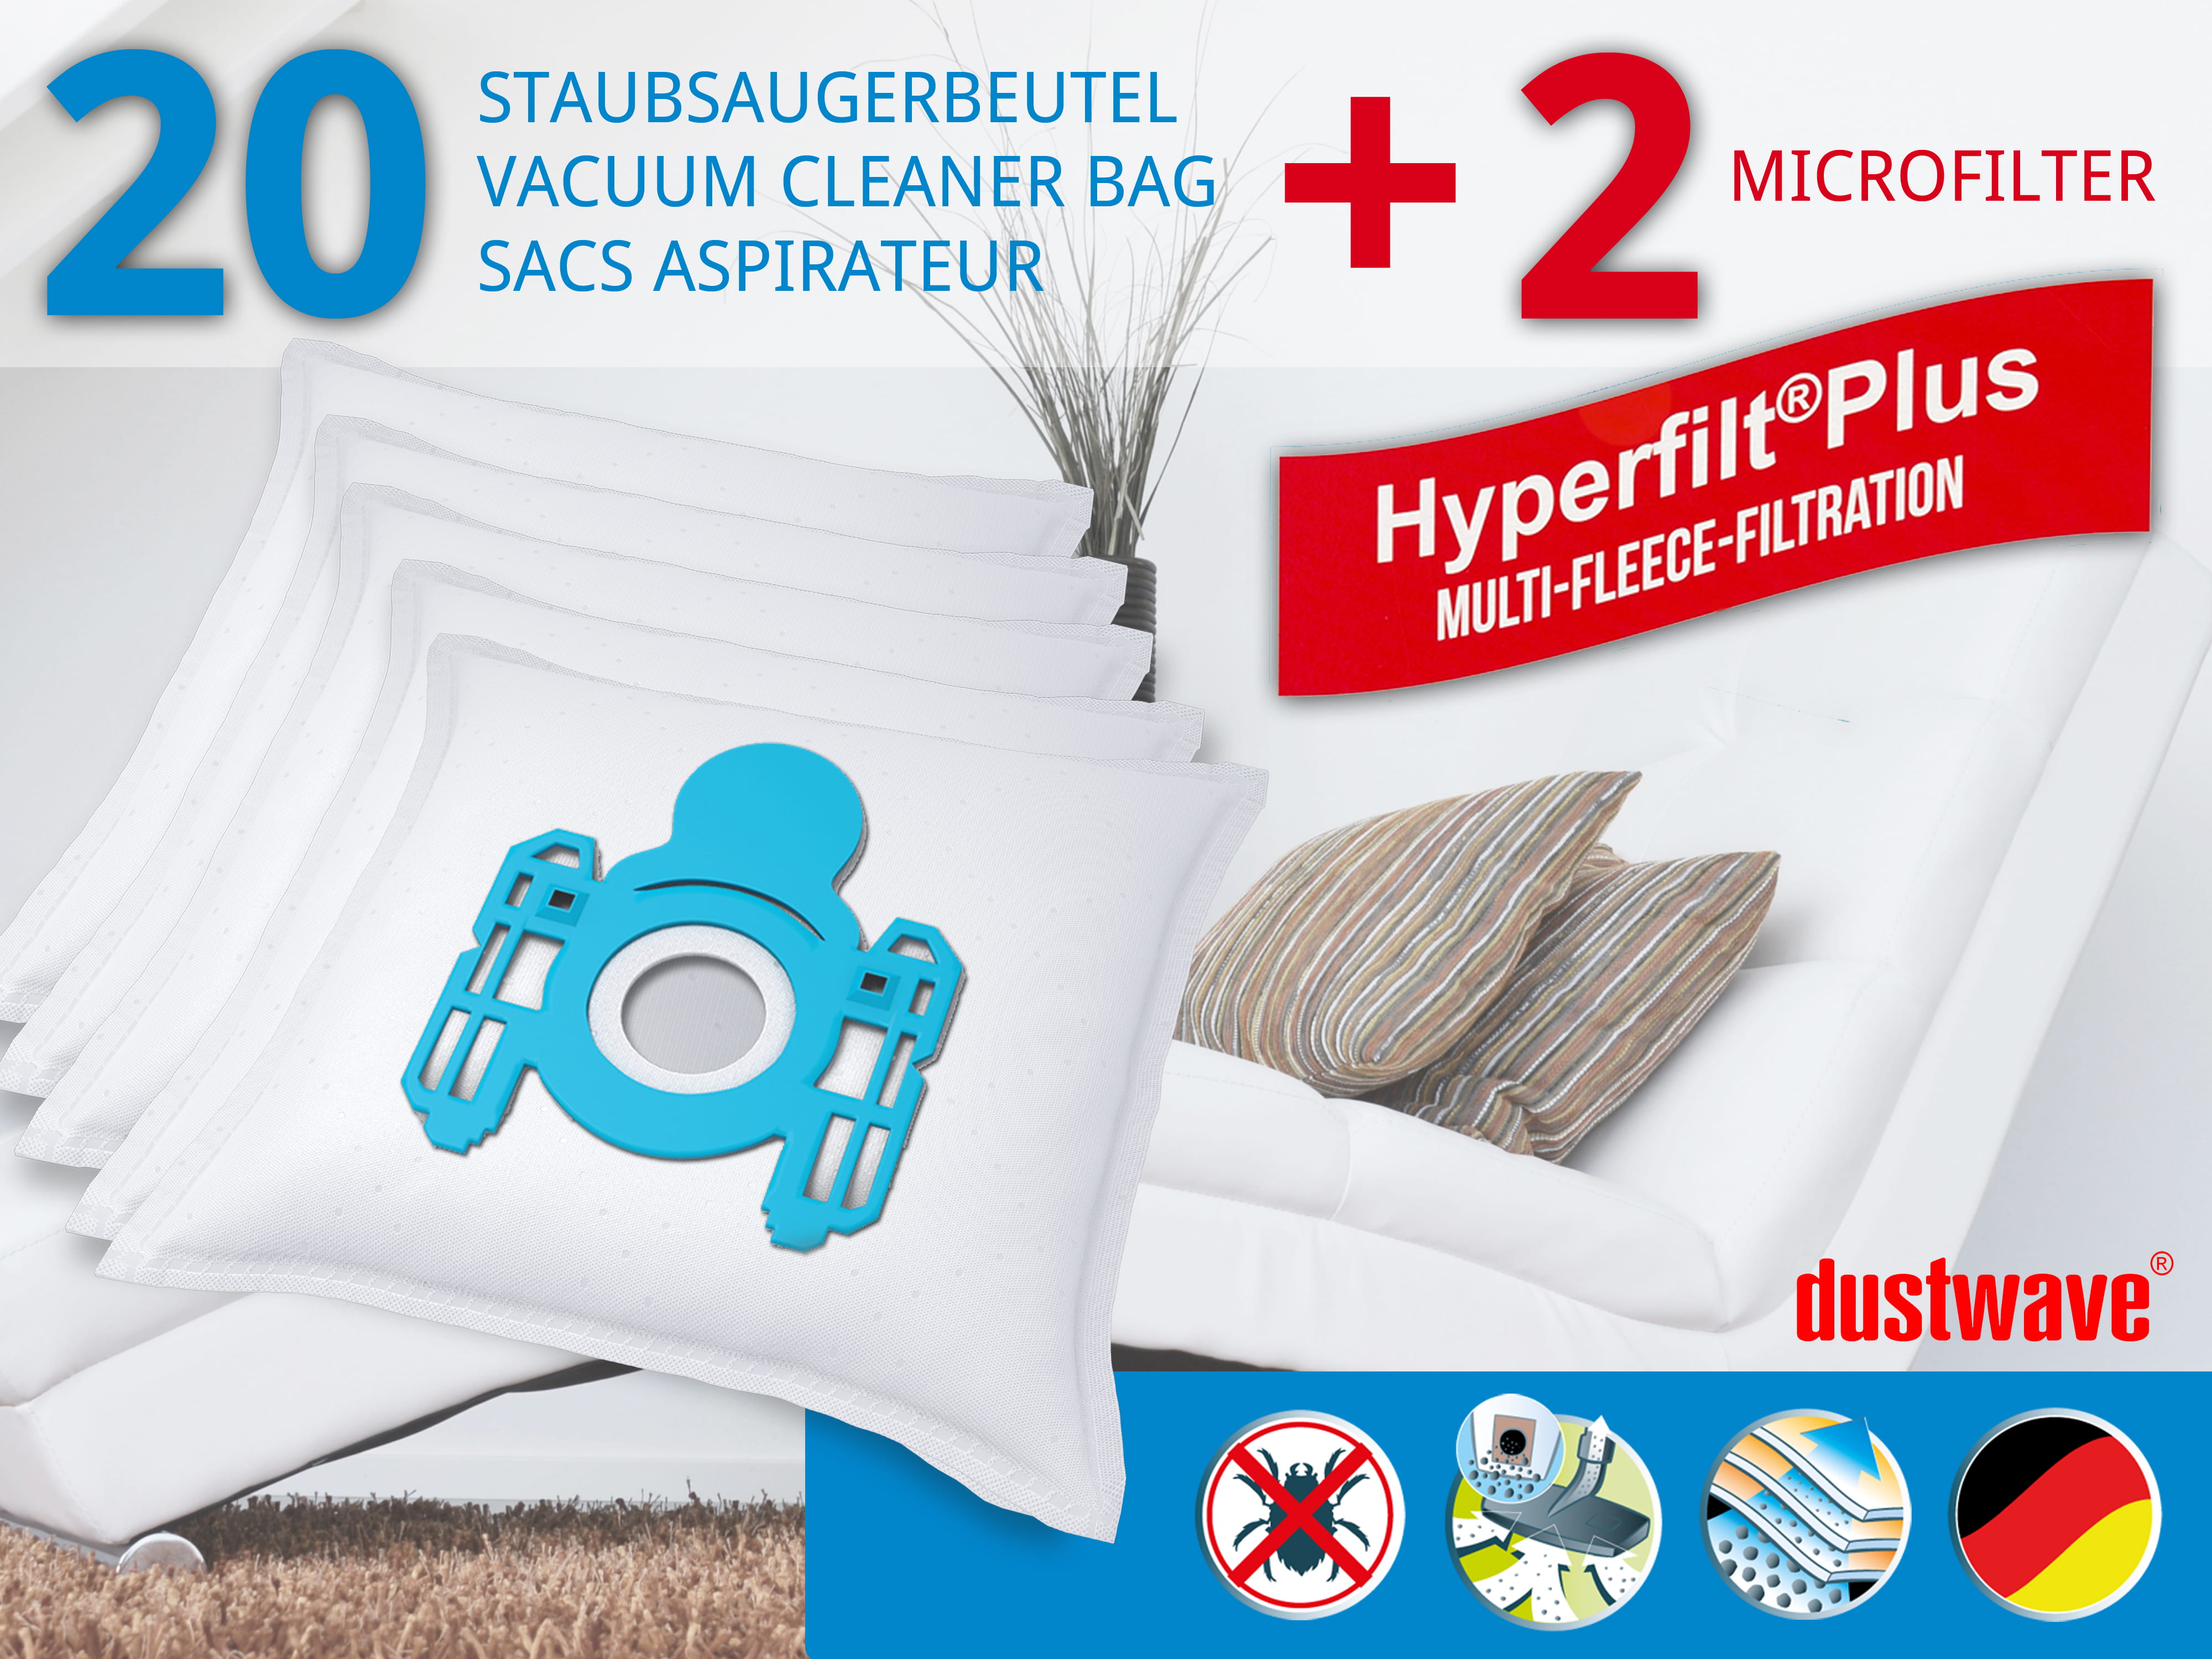 Dustwave® 20 Staubsaugerbeutel für AquaPur AE 700 - hocheffizient, mehrlagiges Mikrovlies mit Hygieneverschluss - Made in Germany